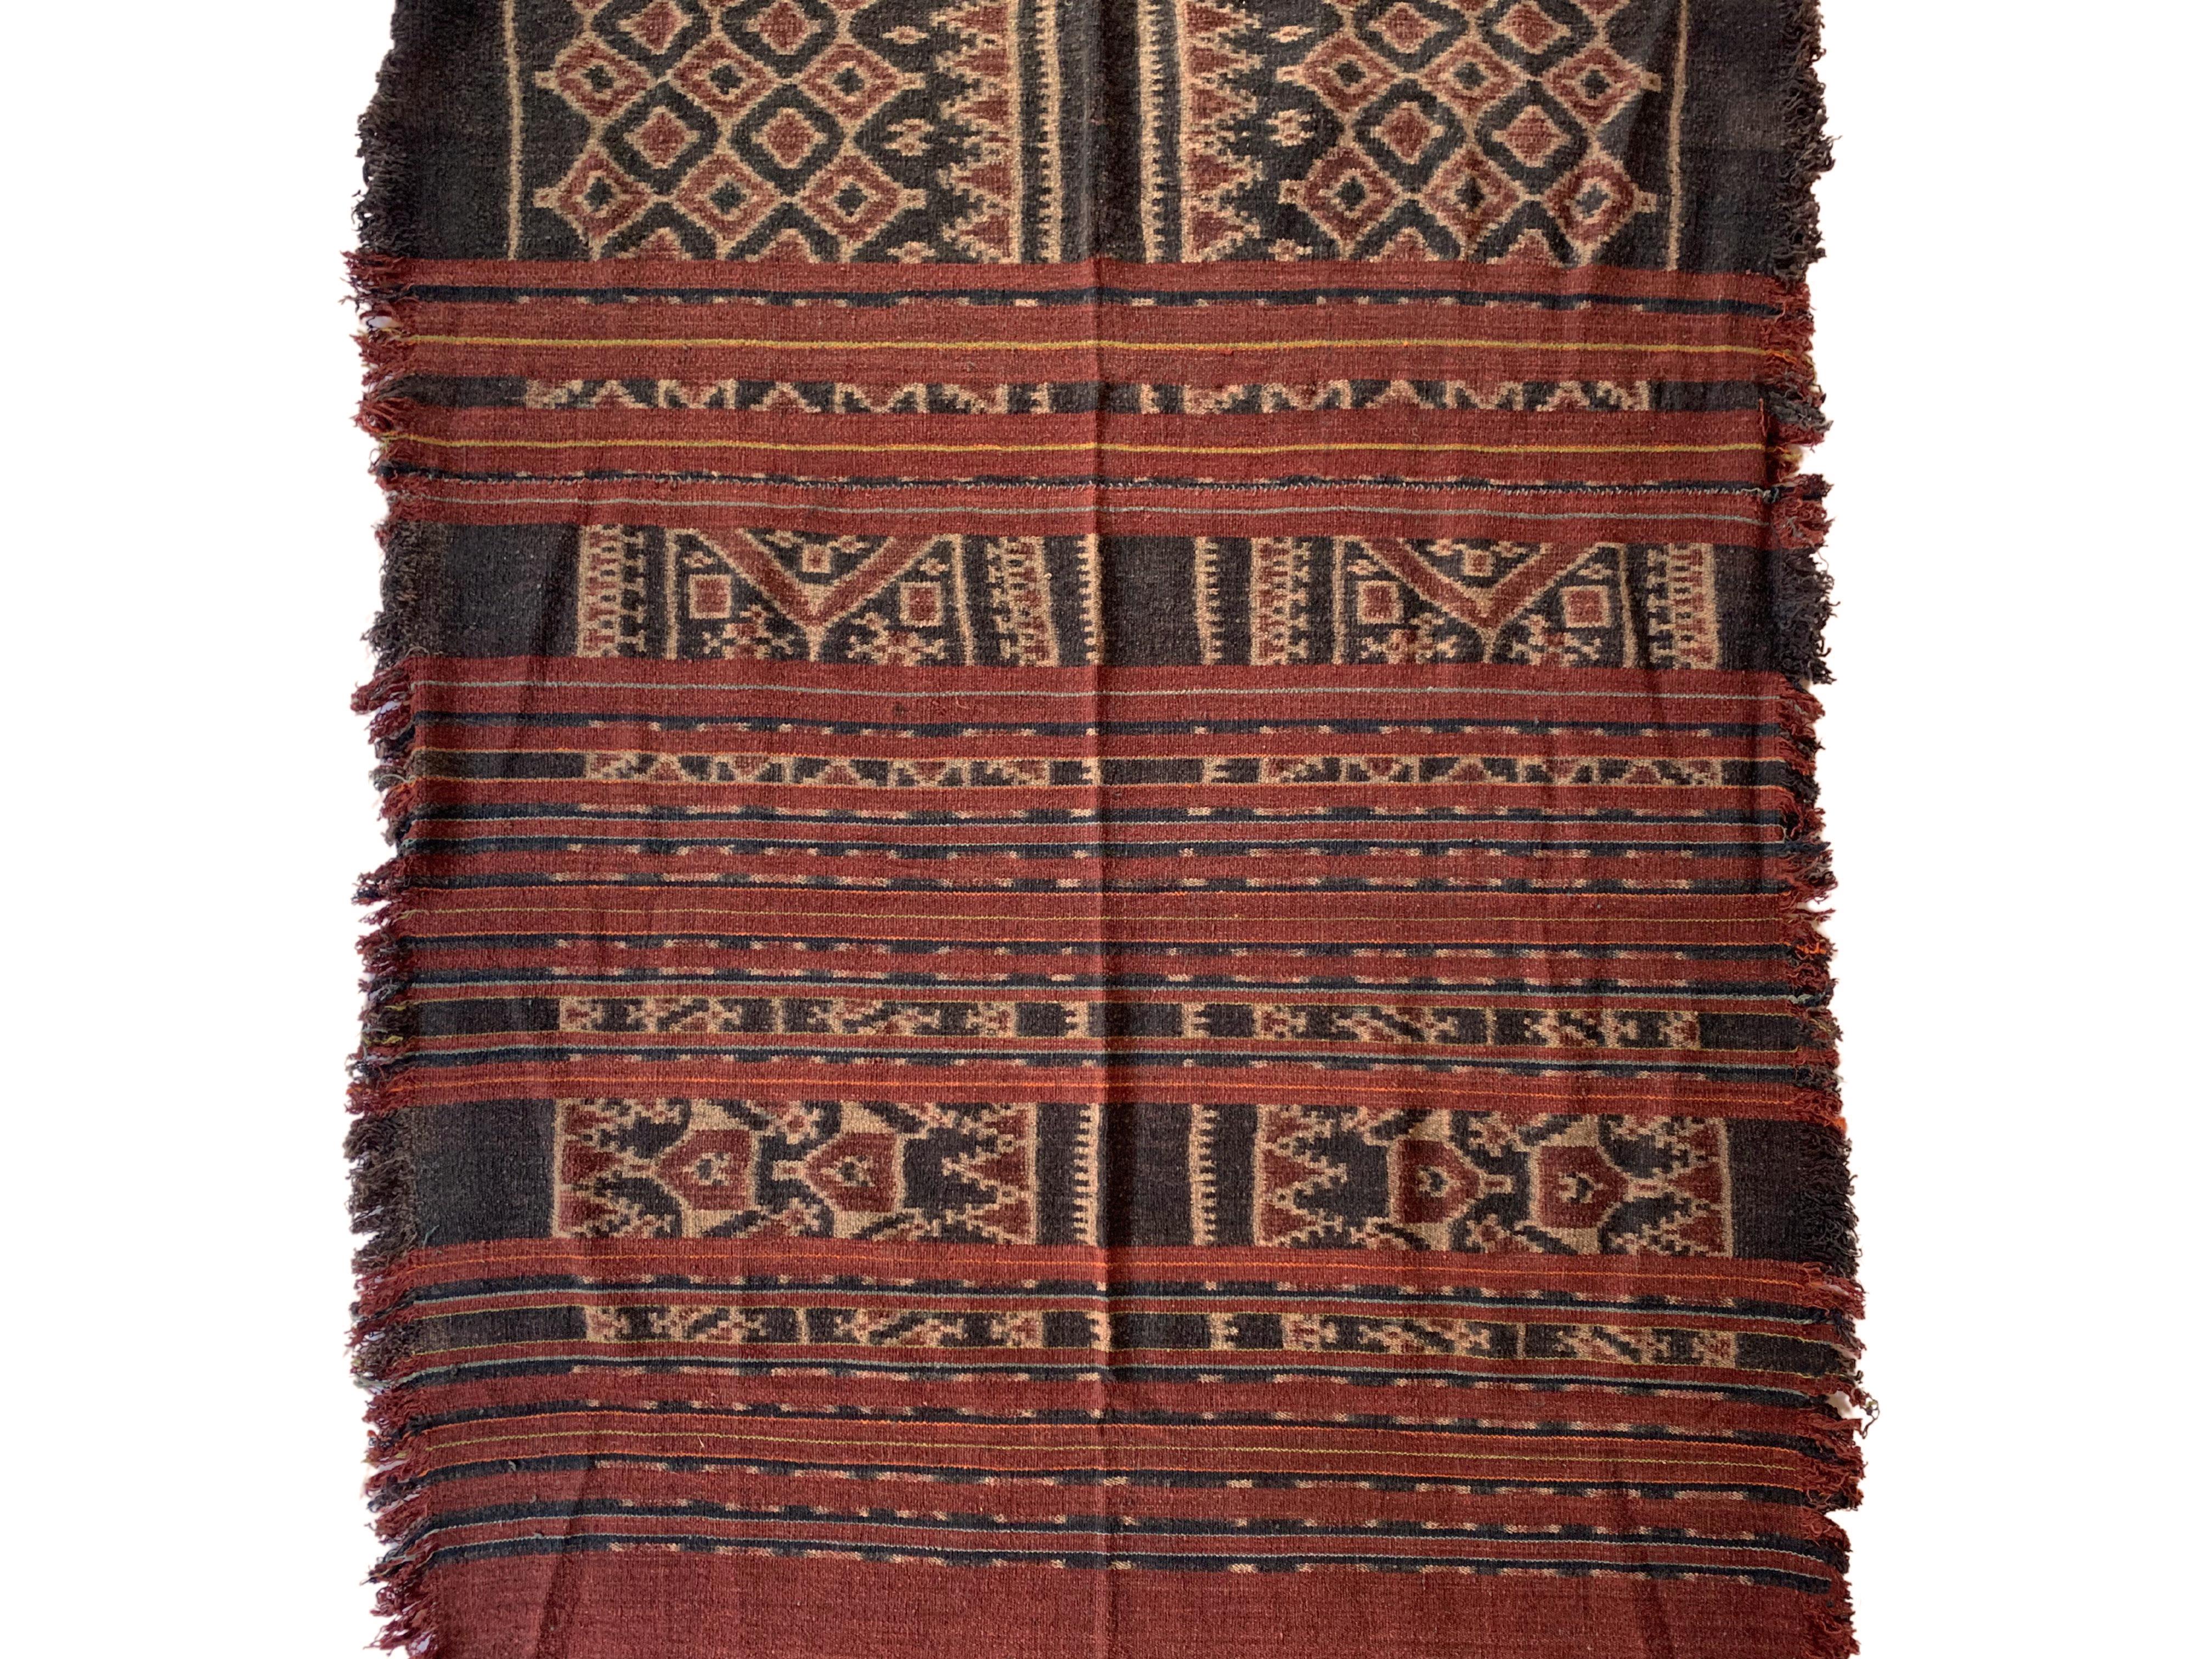 Ein großes Ikat-Textil von den Toraja-Stämmen in Sulawesi, Indonesien. Die Toraja sind eine ethnische und kulturelle Gruppe von Menschen, die das gebirgige Hochland von Südsulawesi, Indonesien, bewohnen. Die Torajan sind berühmt für ihre